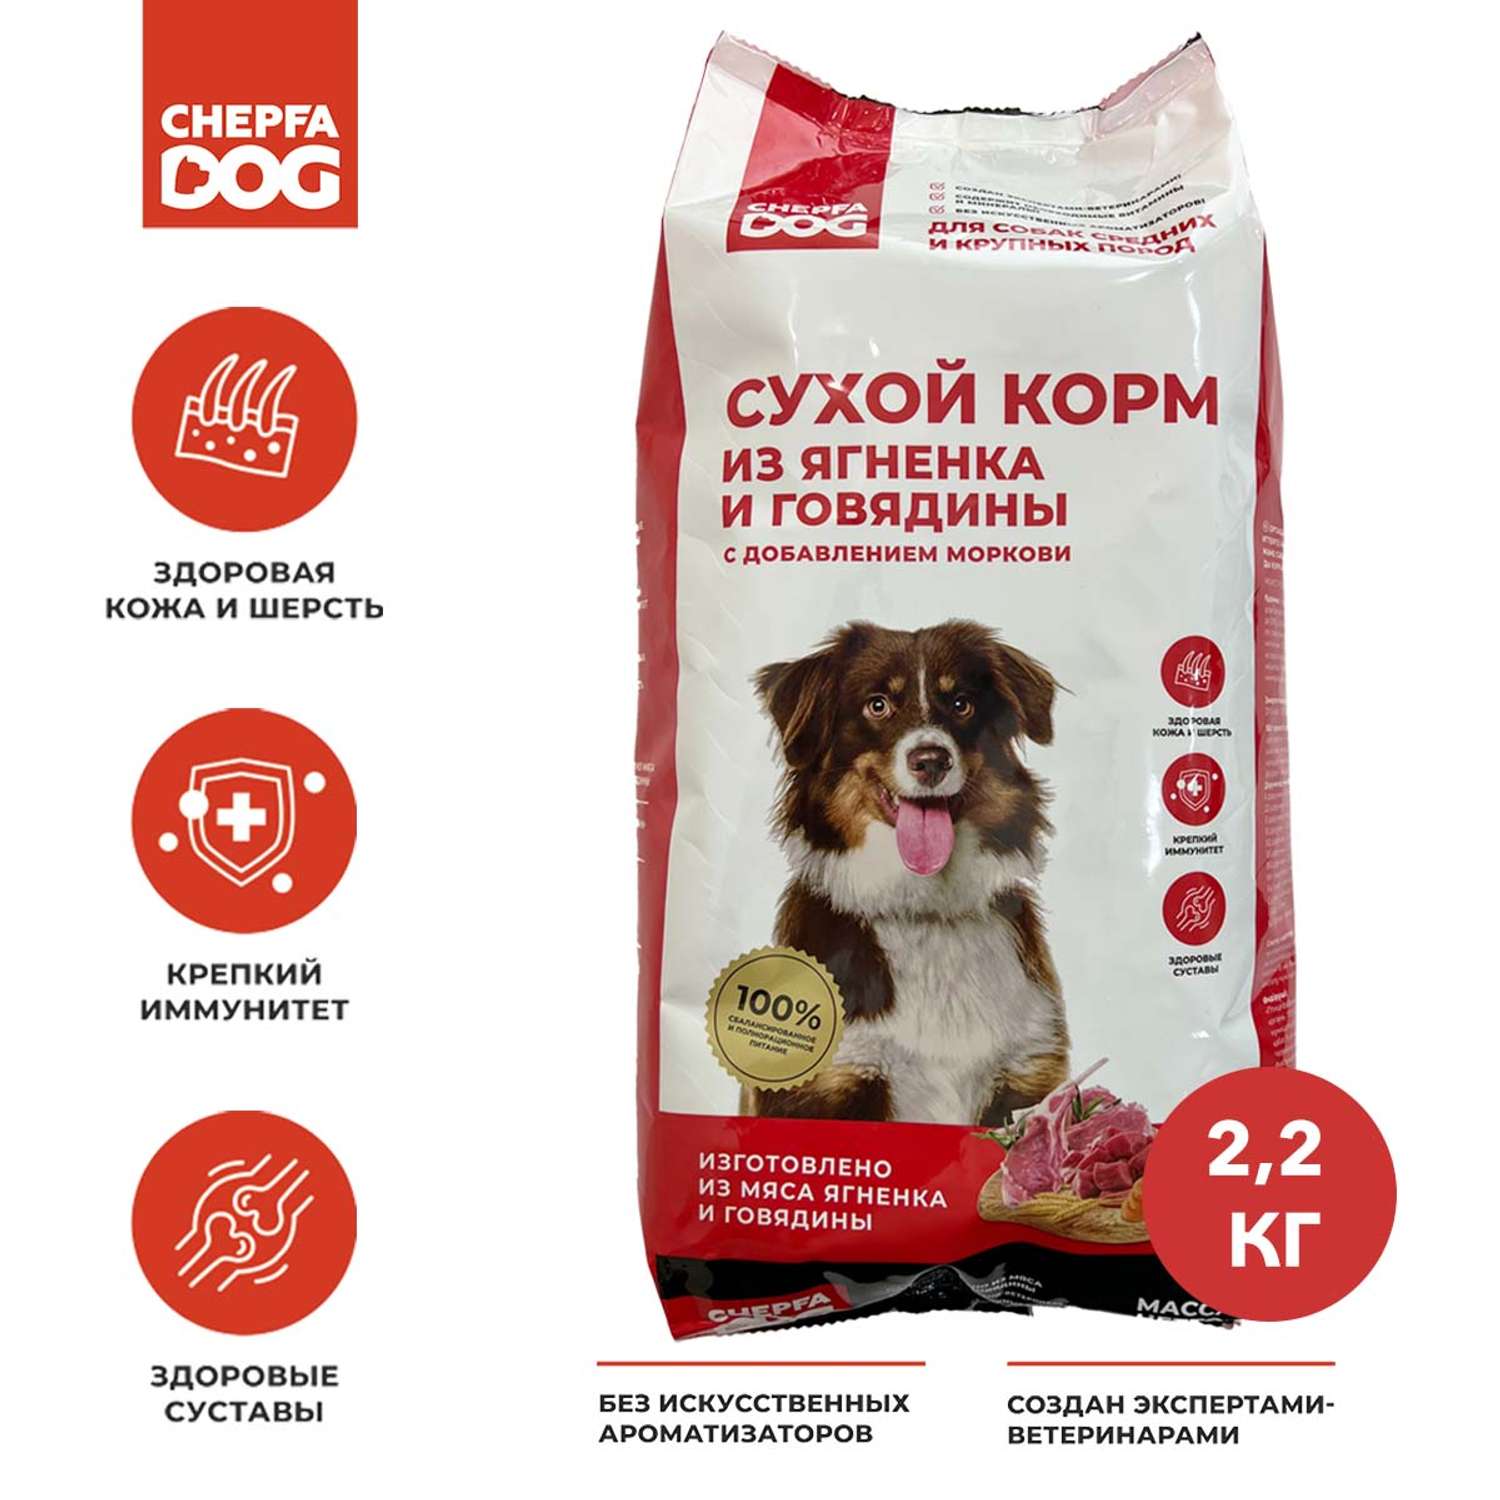 Сухой корм для собак Chepfa Dog Полнорационный ягненок и говядина 2.2 кг для взрослых собак средних и крупных пород - фото 2